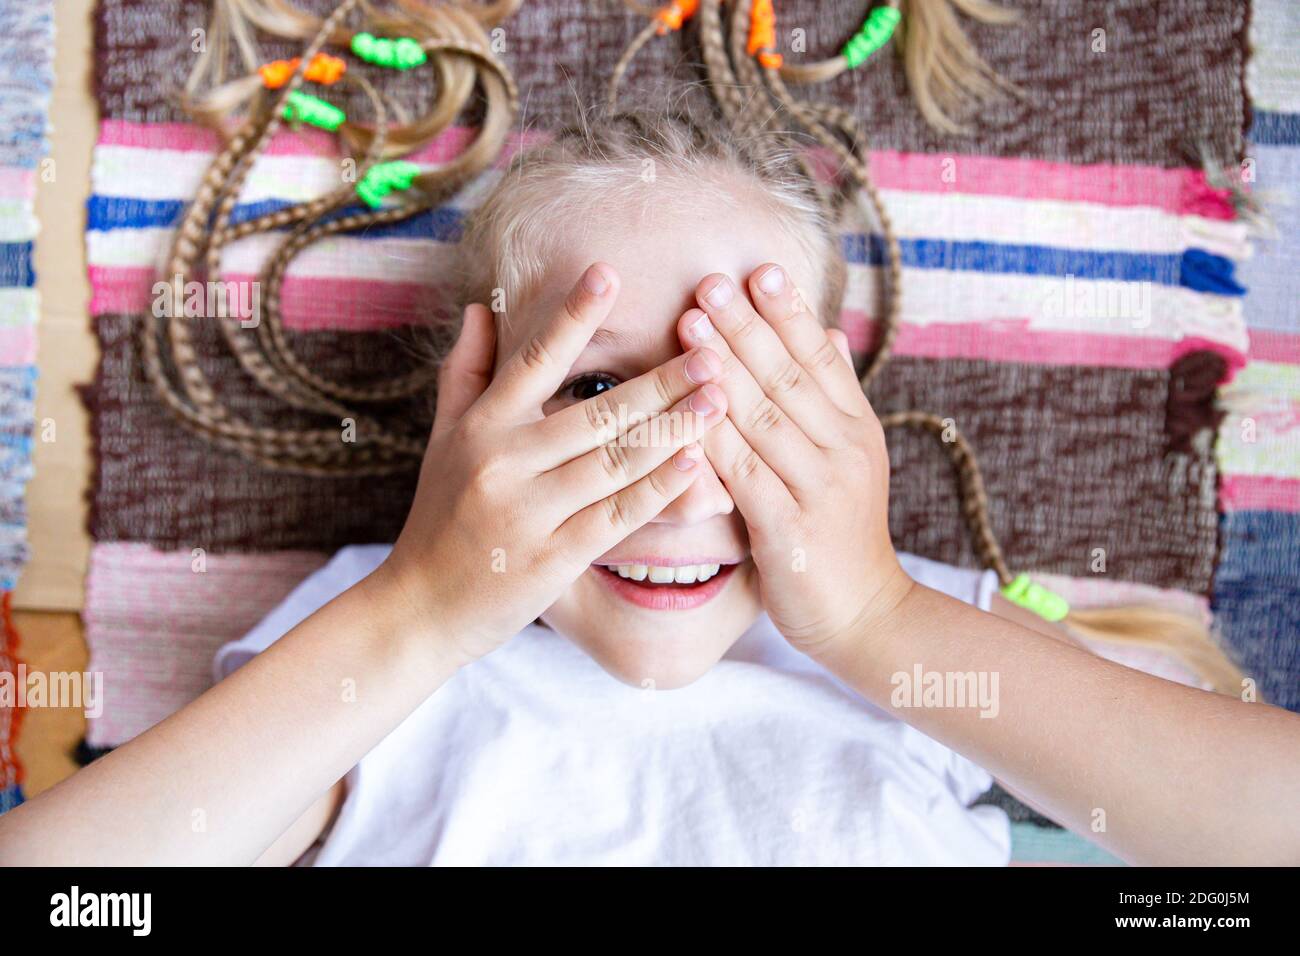 Gros plan portrait d'une jeune fille gaie avec des queues de porc couchées sur un tapis tissé rayé, souriant, jouant cacher et chercher. Banque D'Images